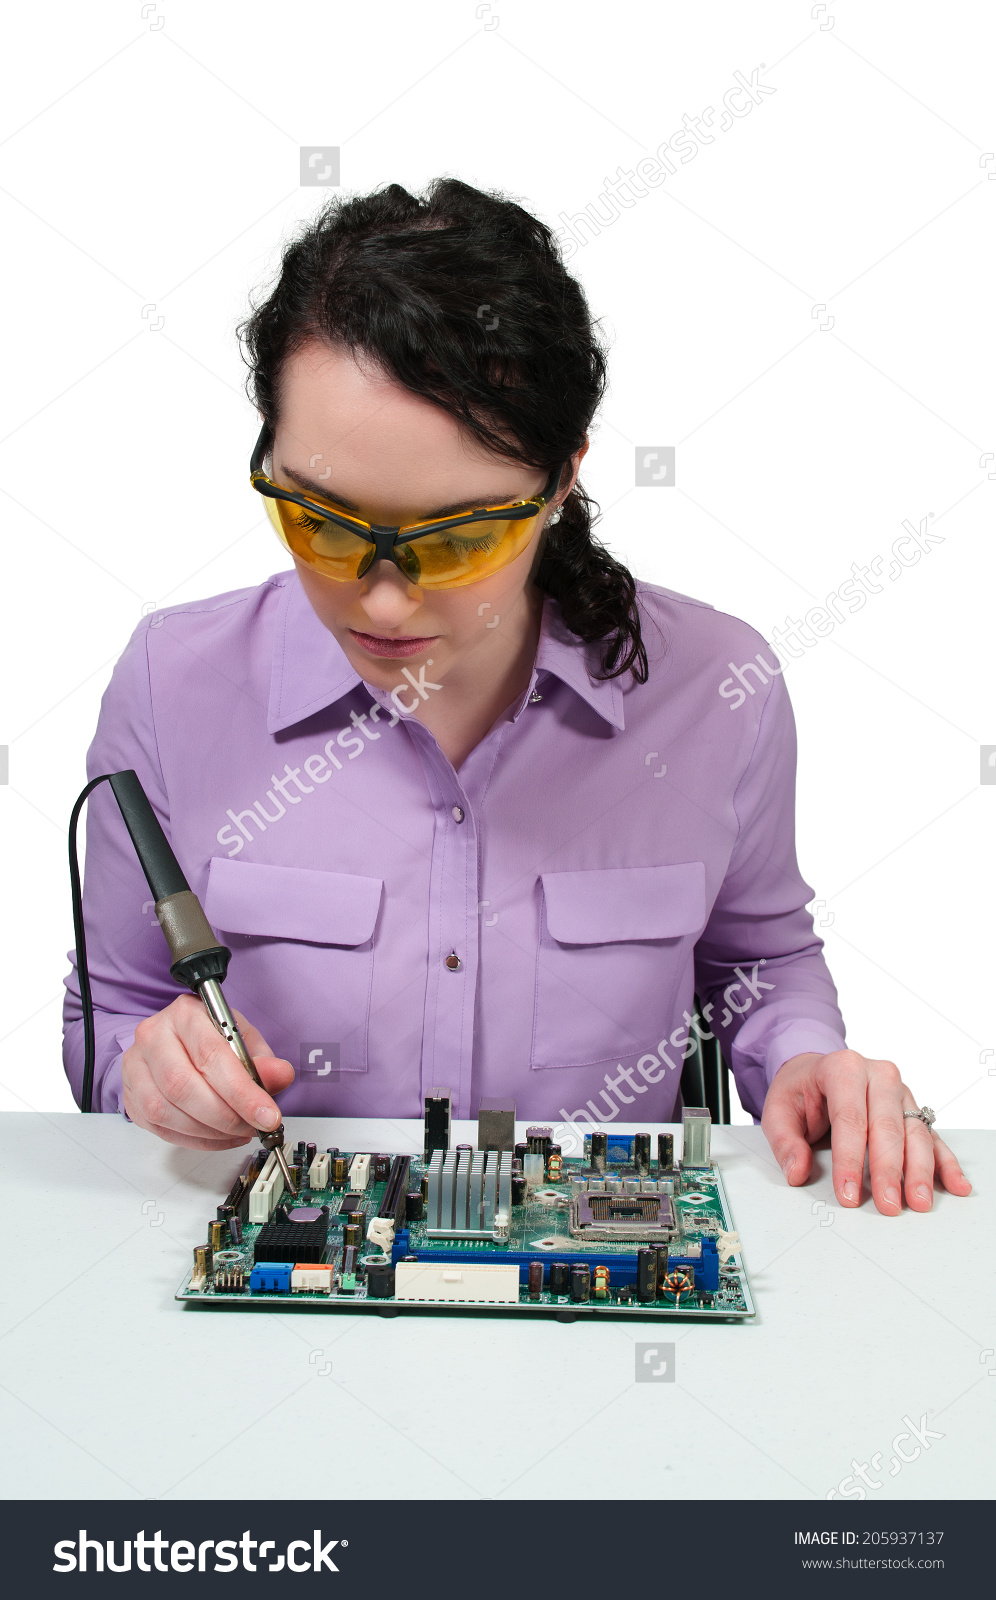 stock-photo-beautiful-woman-repair-soldering-a-printed-circuit-board-205937137.jpg